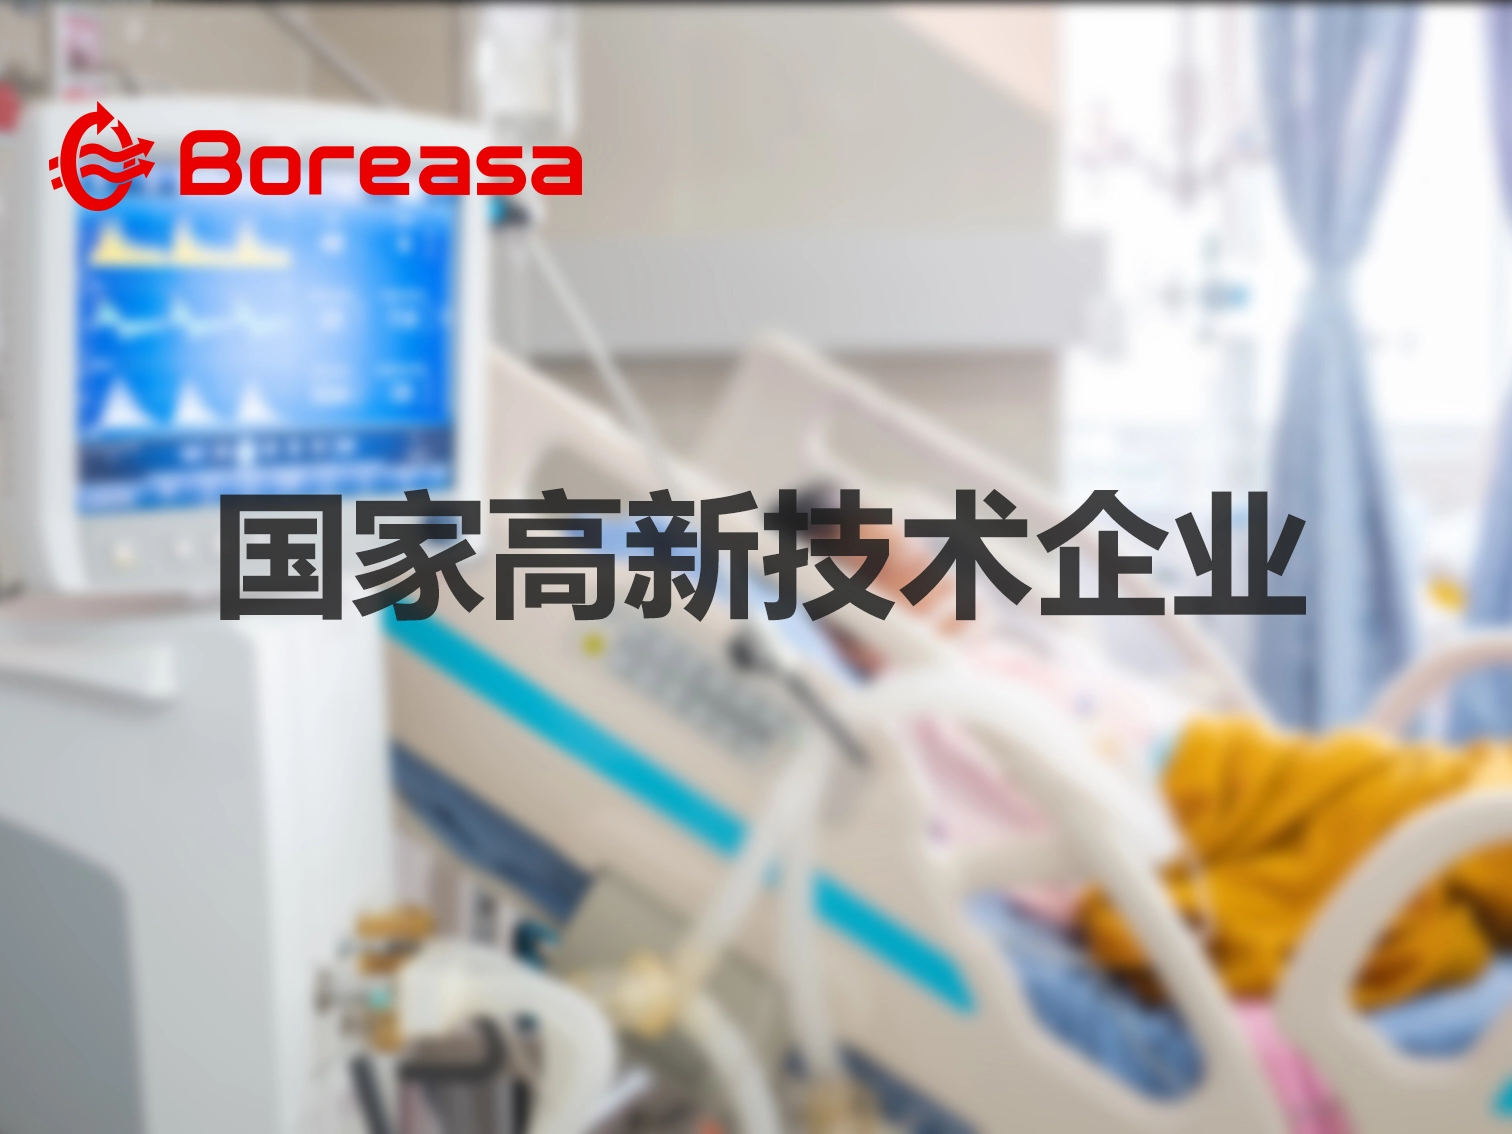 杭州贝丰科技有限公司被认定为国家高新技术企业